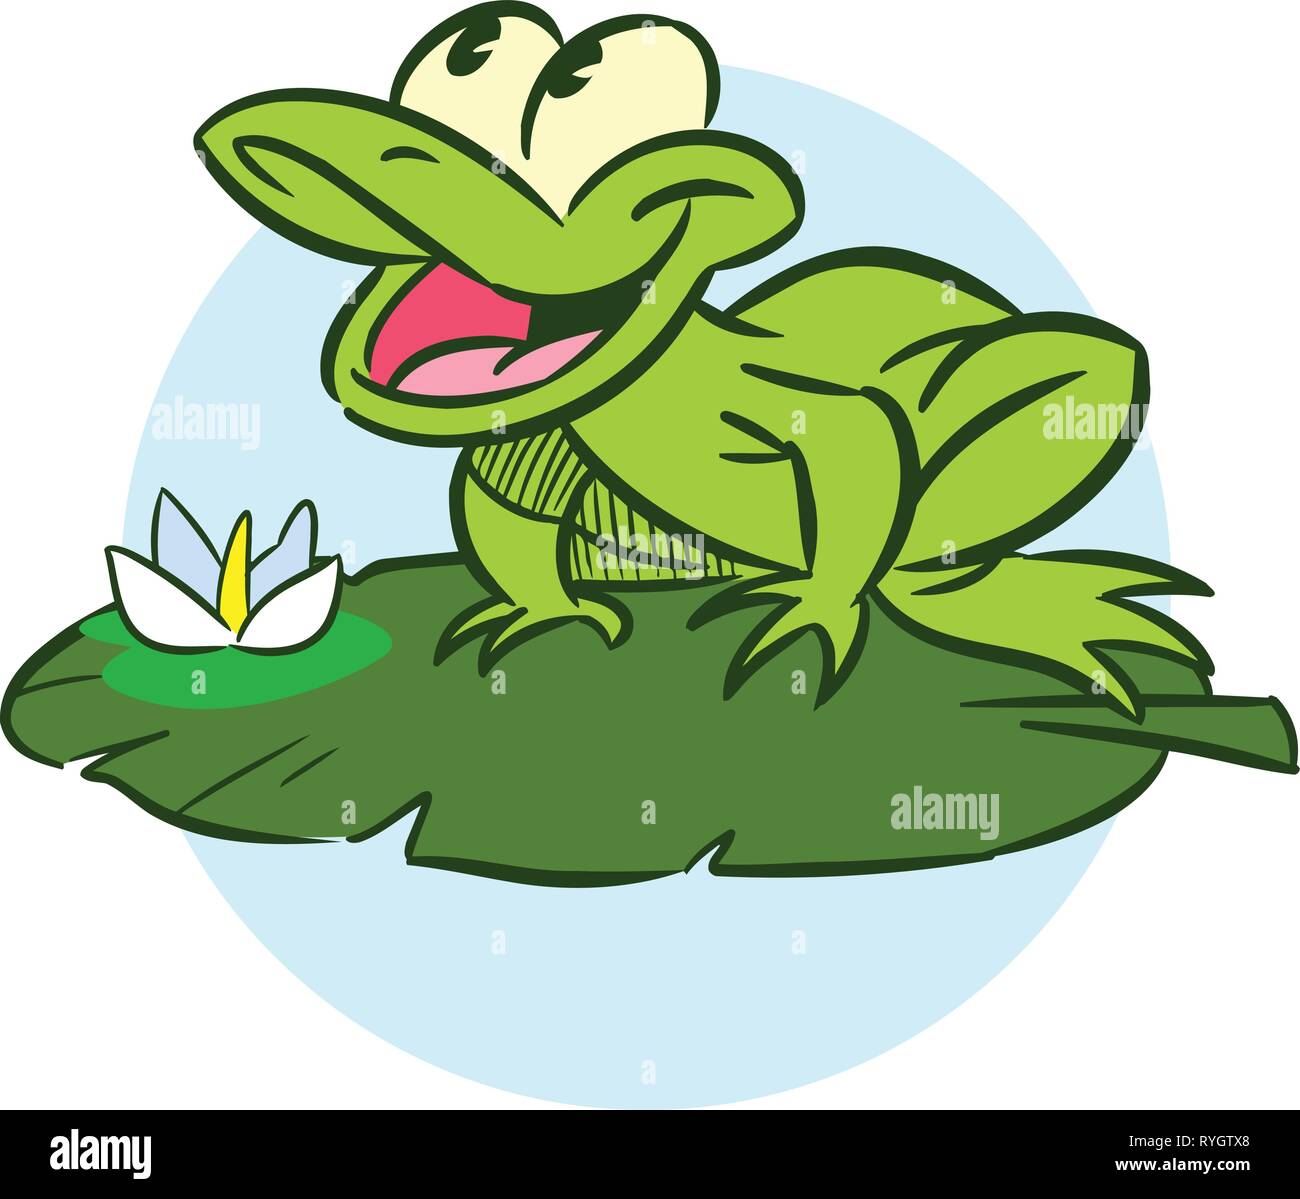 L'illustration montre un funny cartoon grenouille. Elle siège sur un lis feuille. Illustration de Vecteur